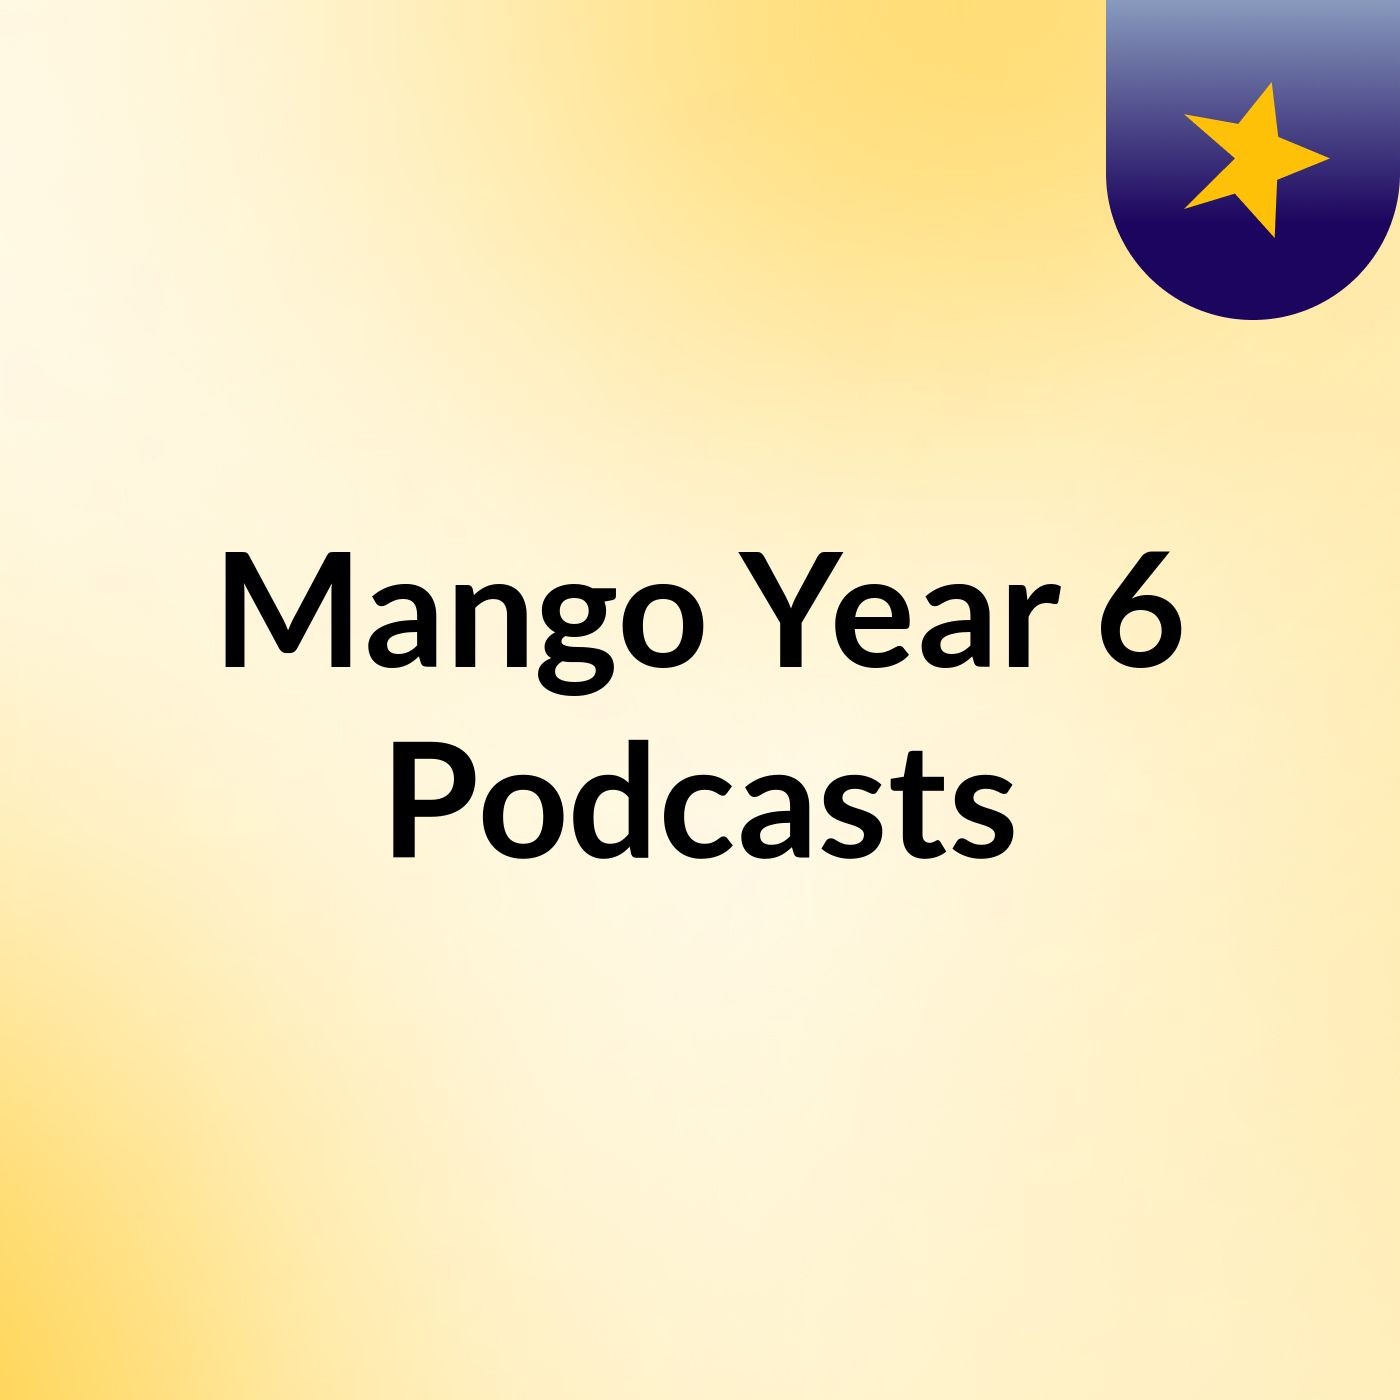 Mango Year 6 Podcasts